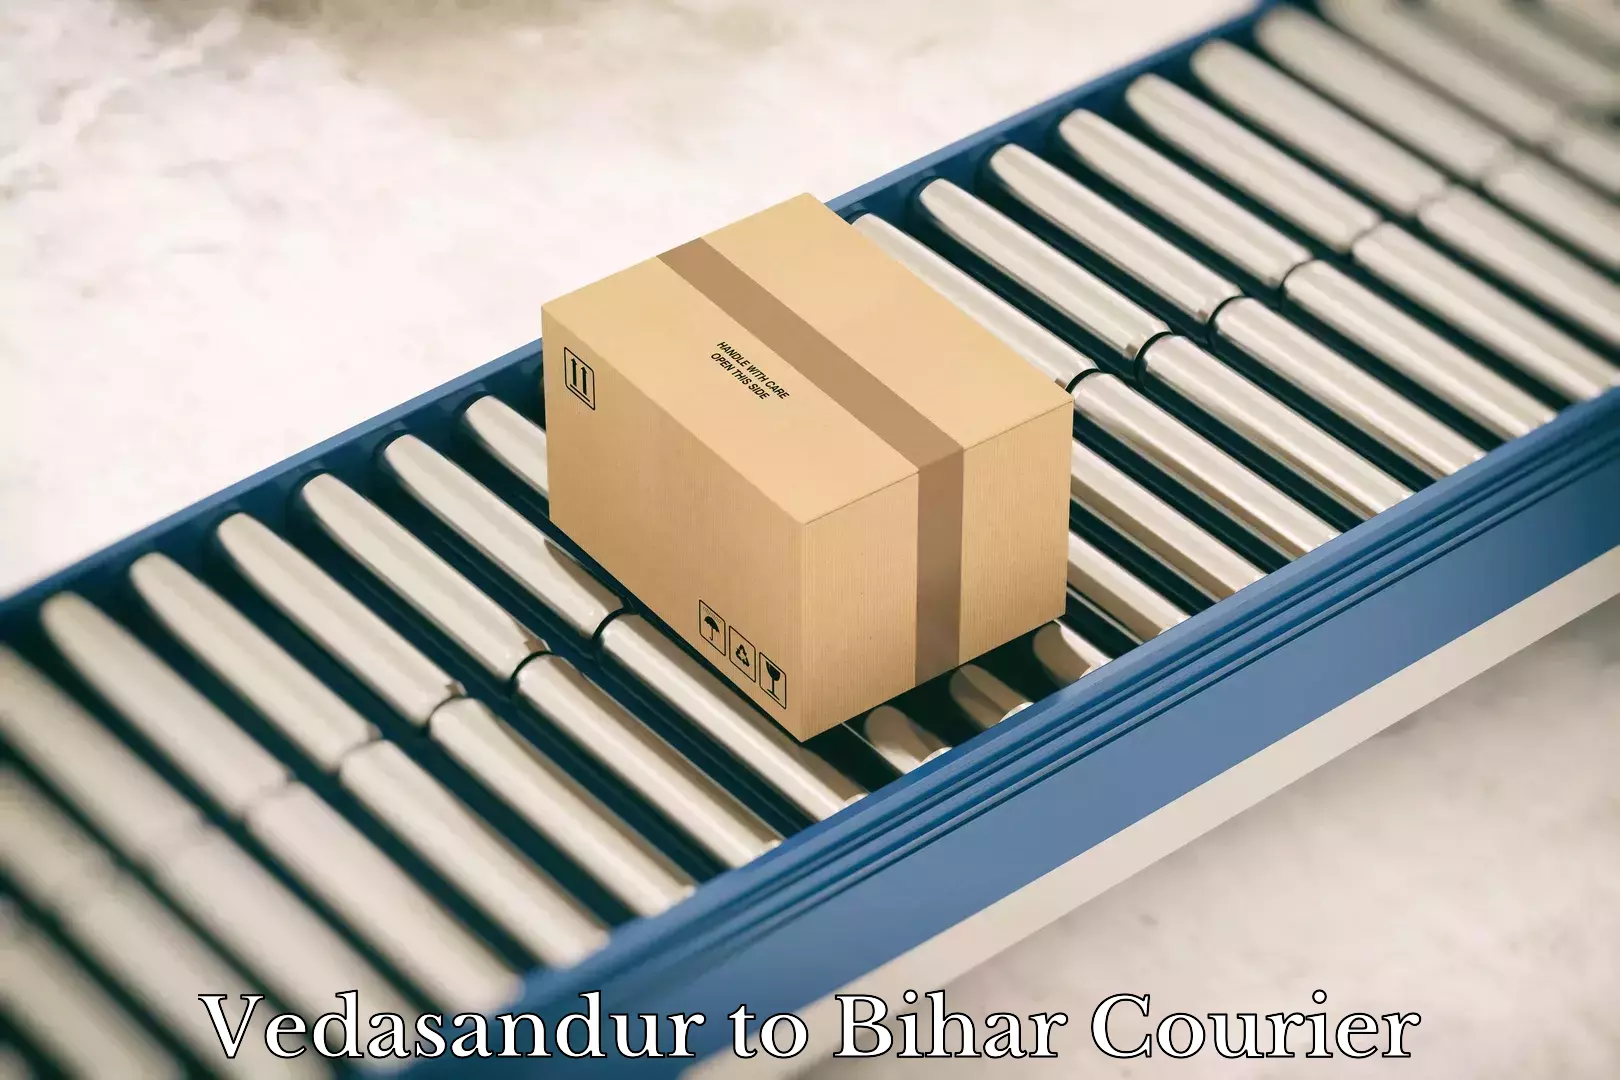 Premium courier services Vedasandur to Bihar